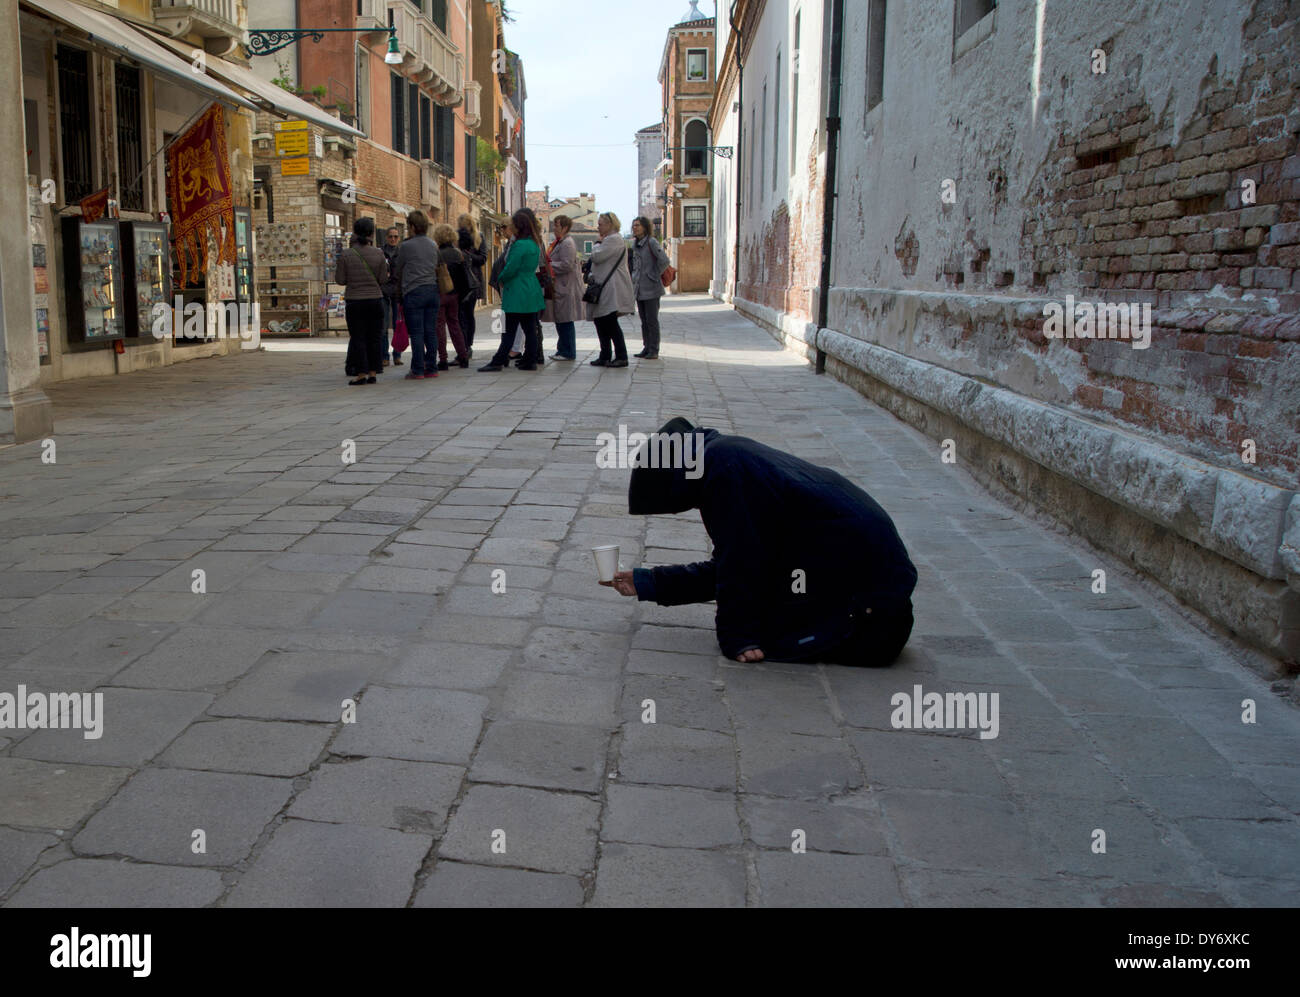 Mendiant dans les rues de Venise, Italie Banque D'Images